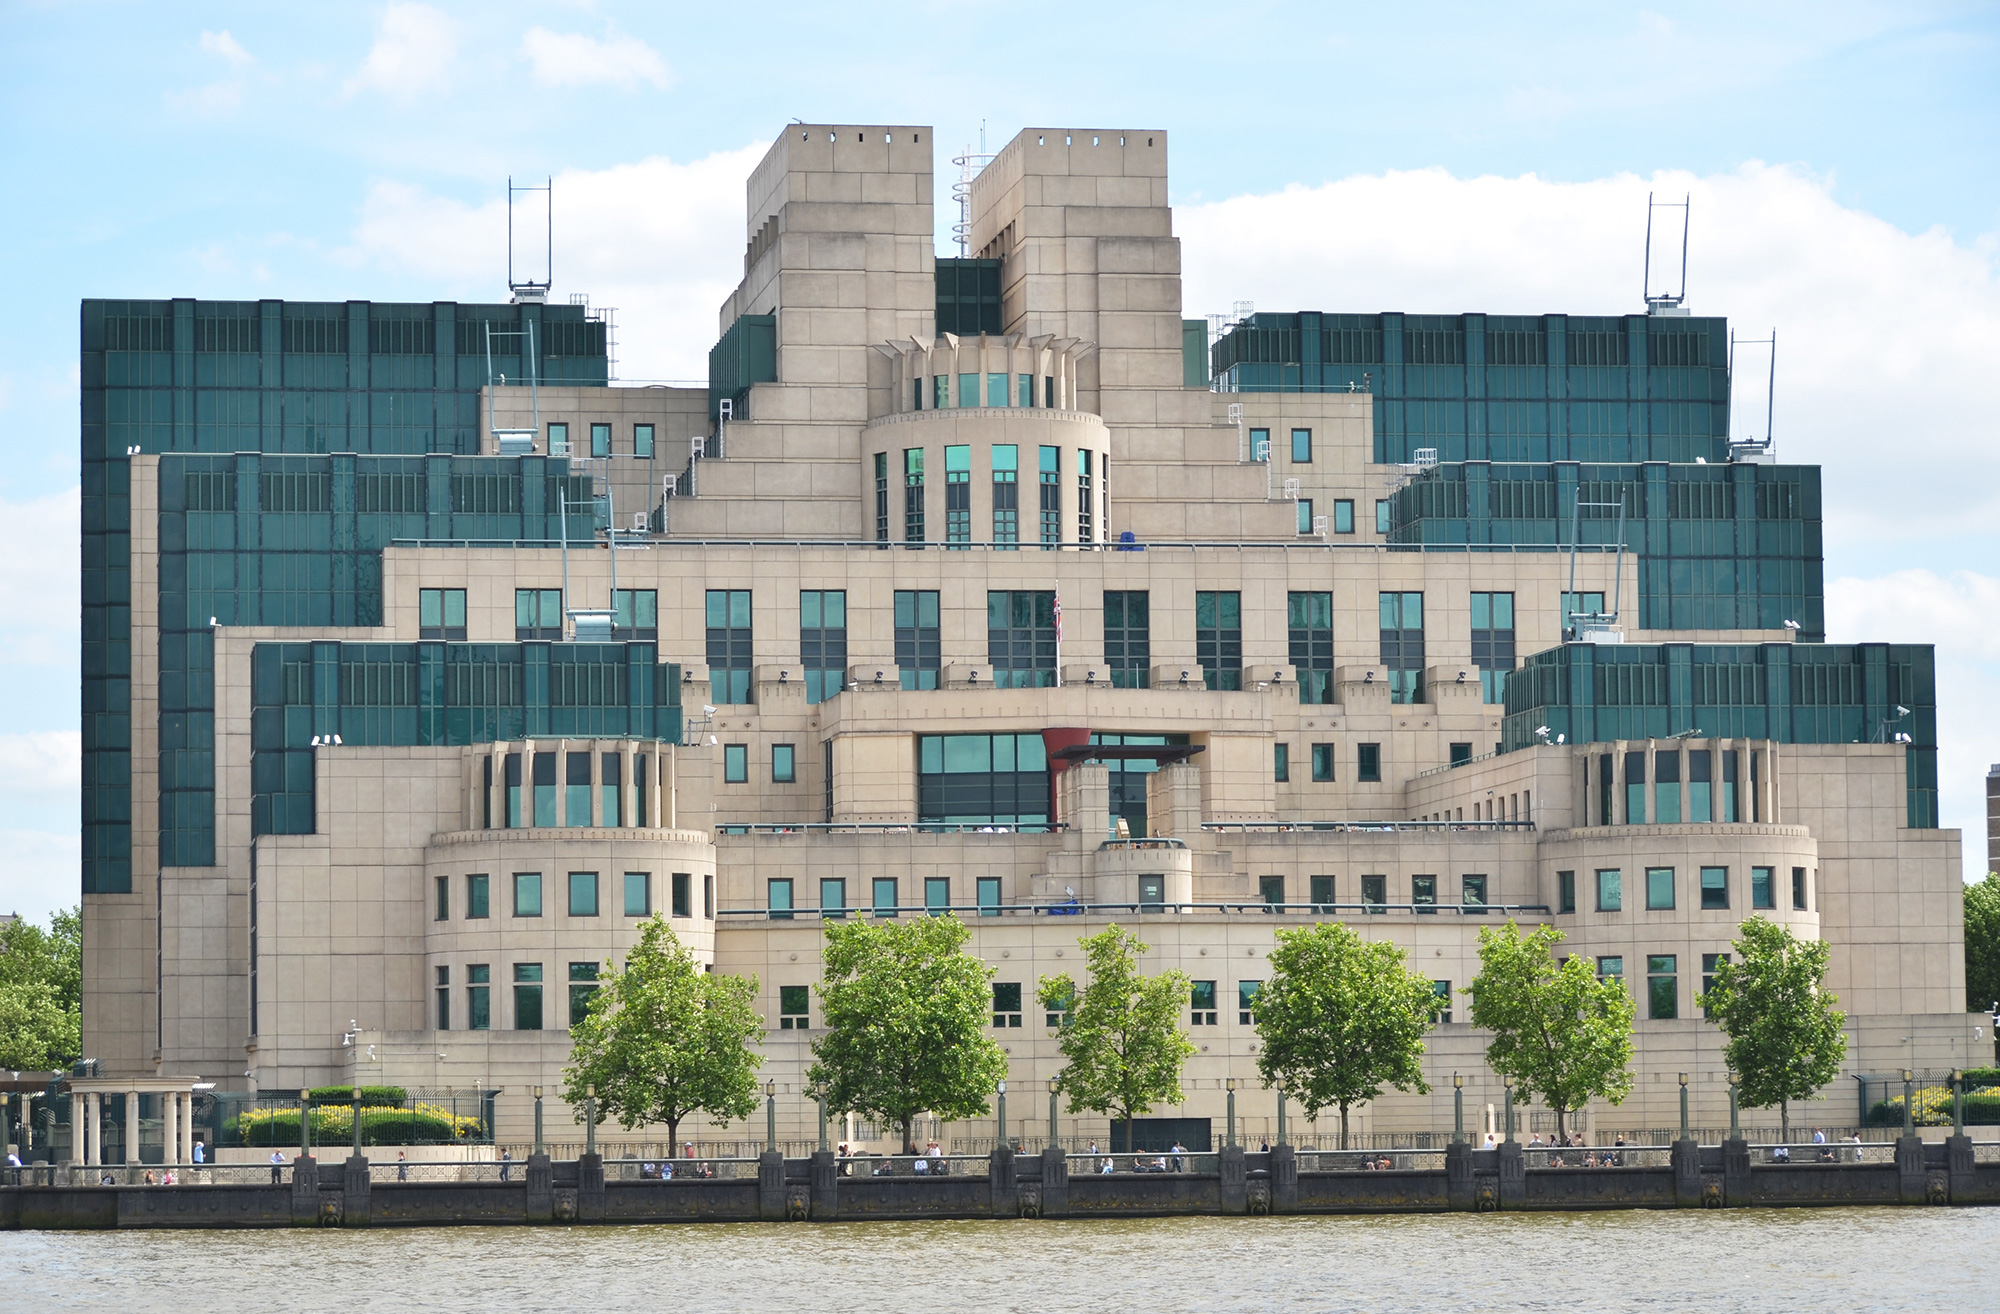 Immeuble du MI6 à Londres © HappyAlex - stock.adobe.com